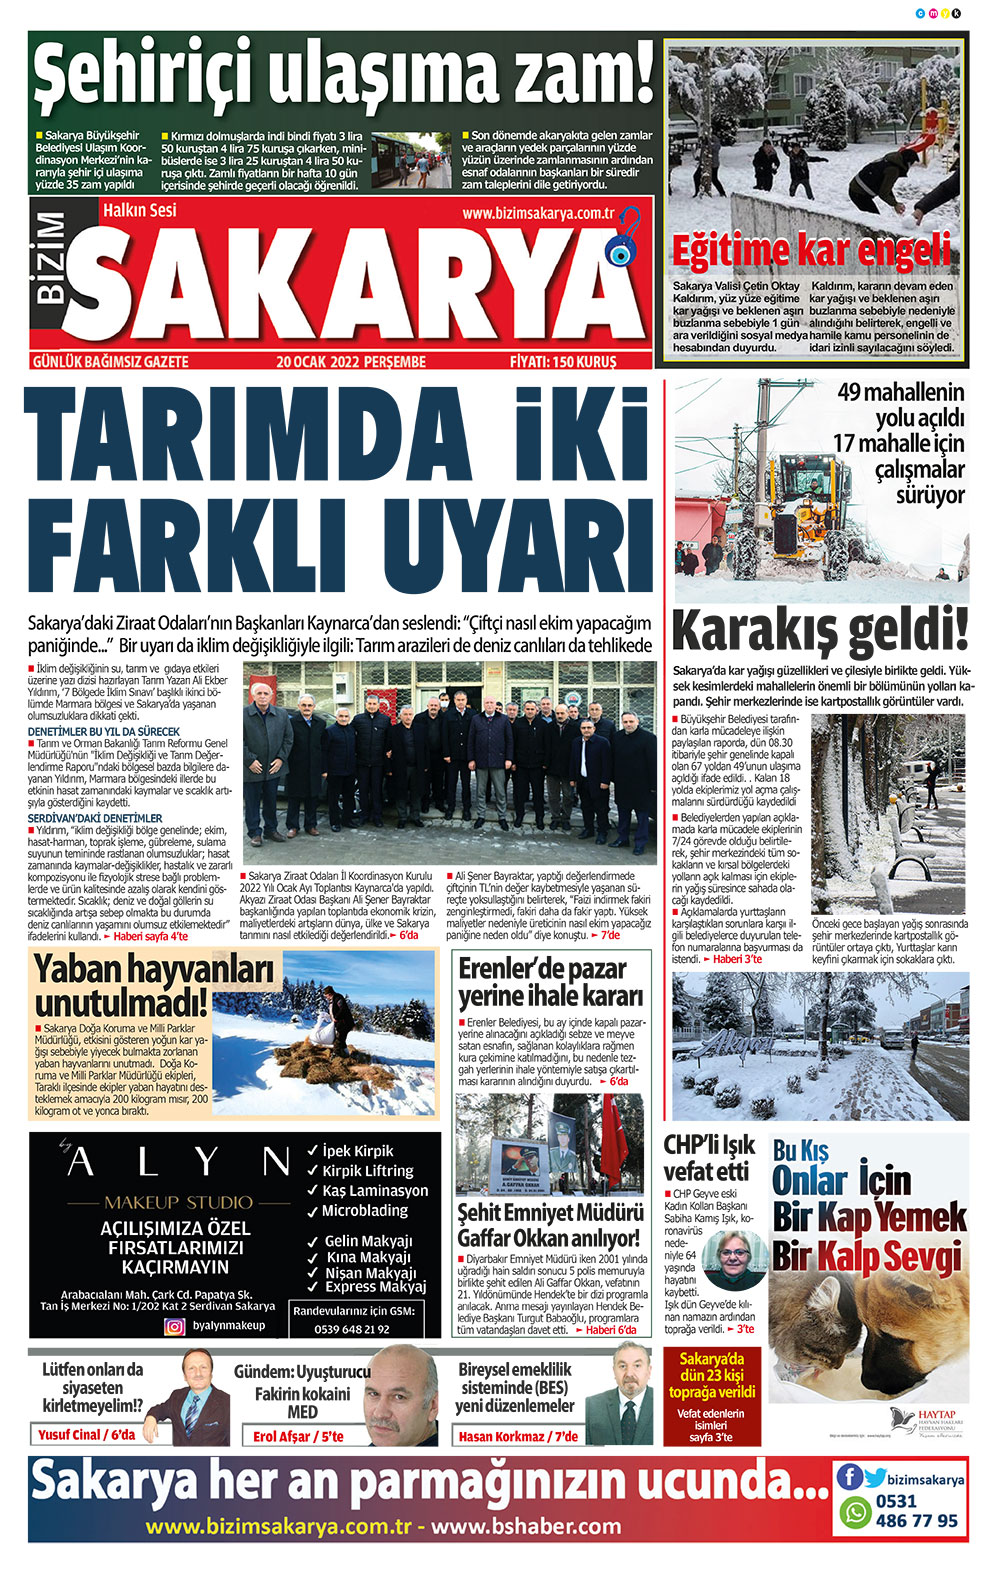 Bizim Sakarya Gazetesi - 20.01.2022 Manşeti